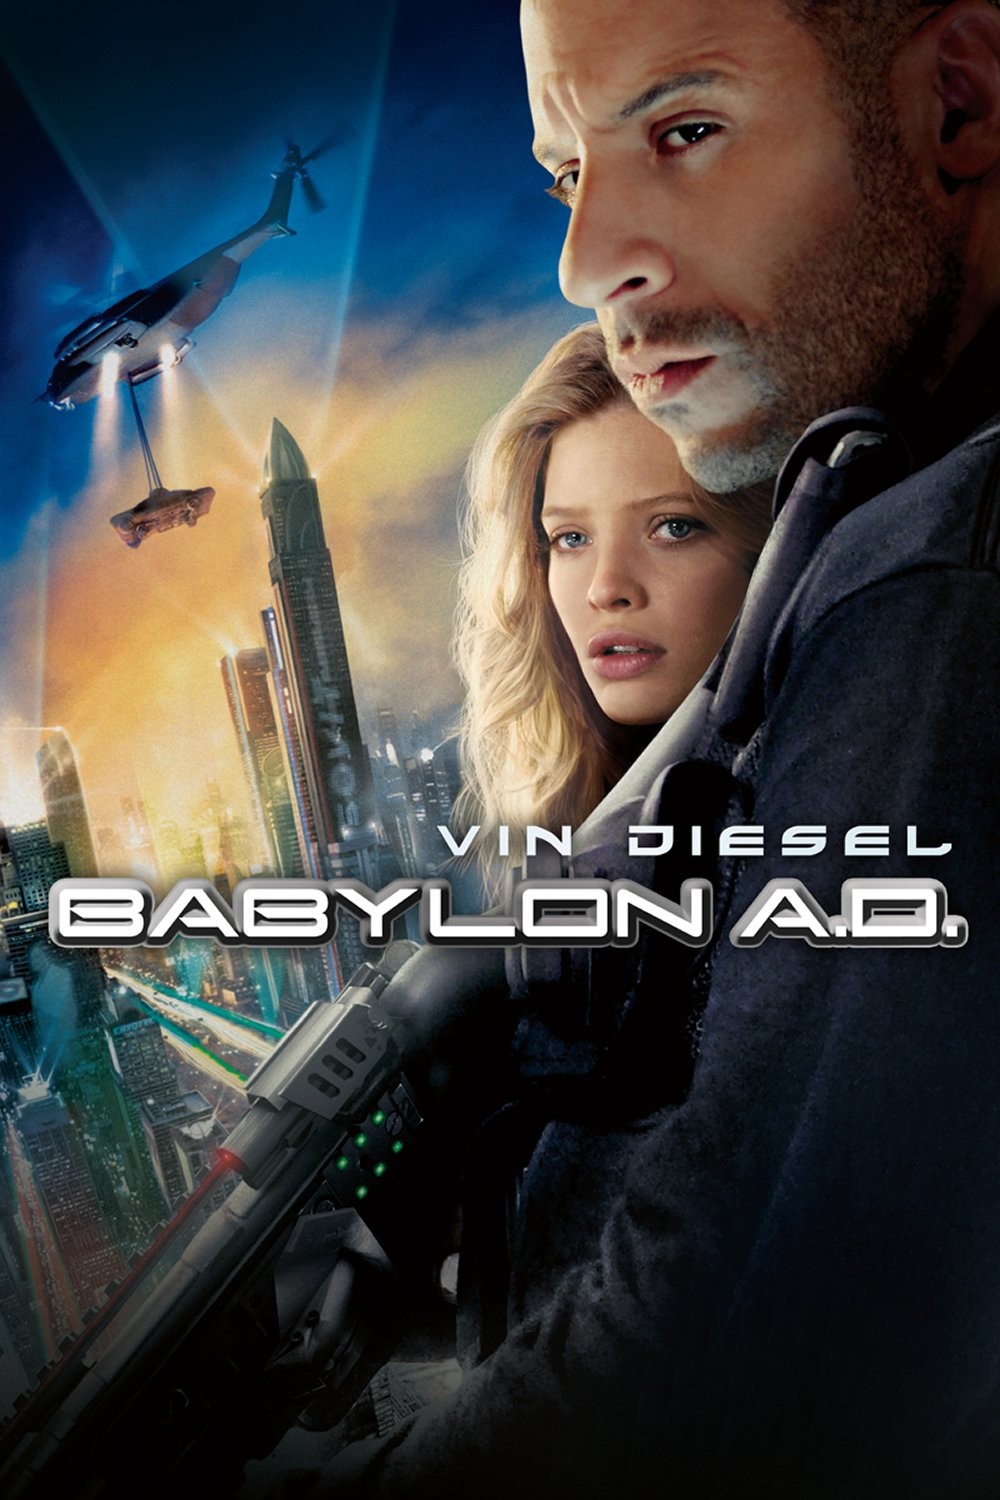 Babylon A.D. (2008) = CSFD 52%